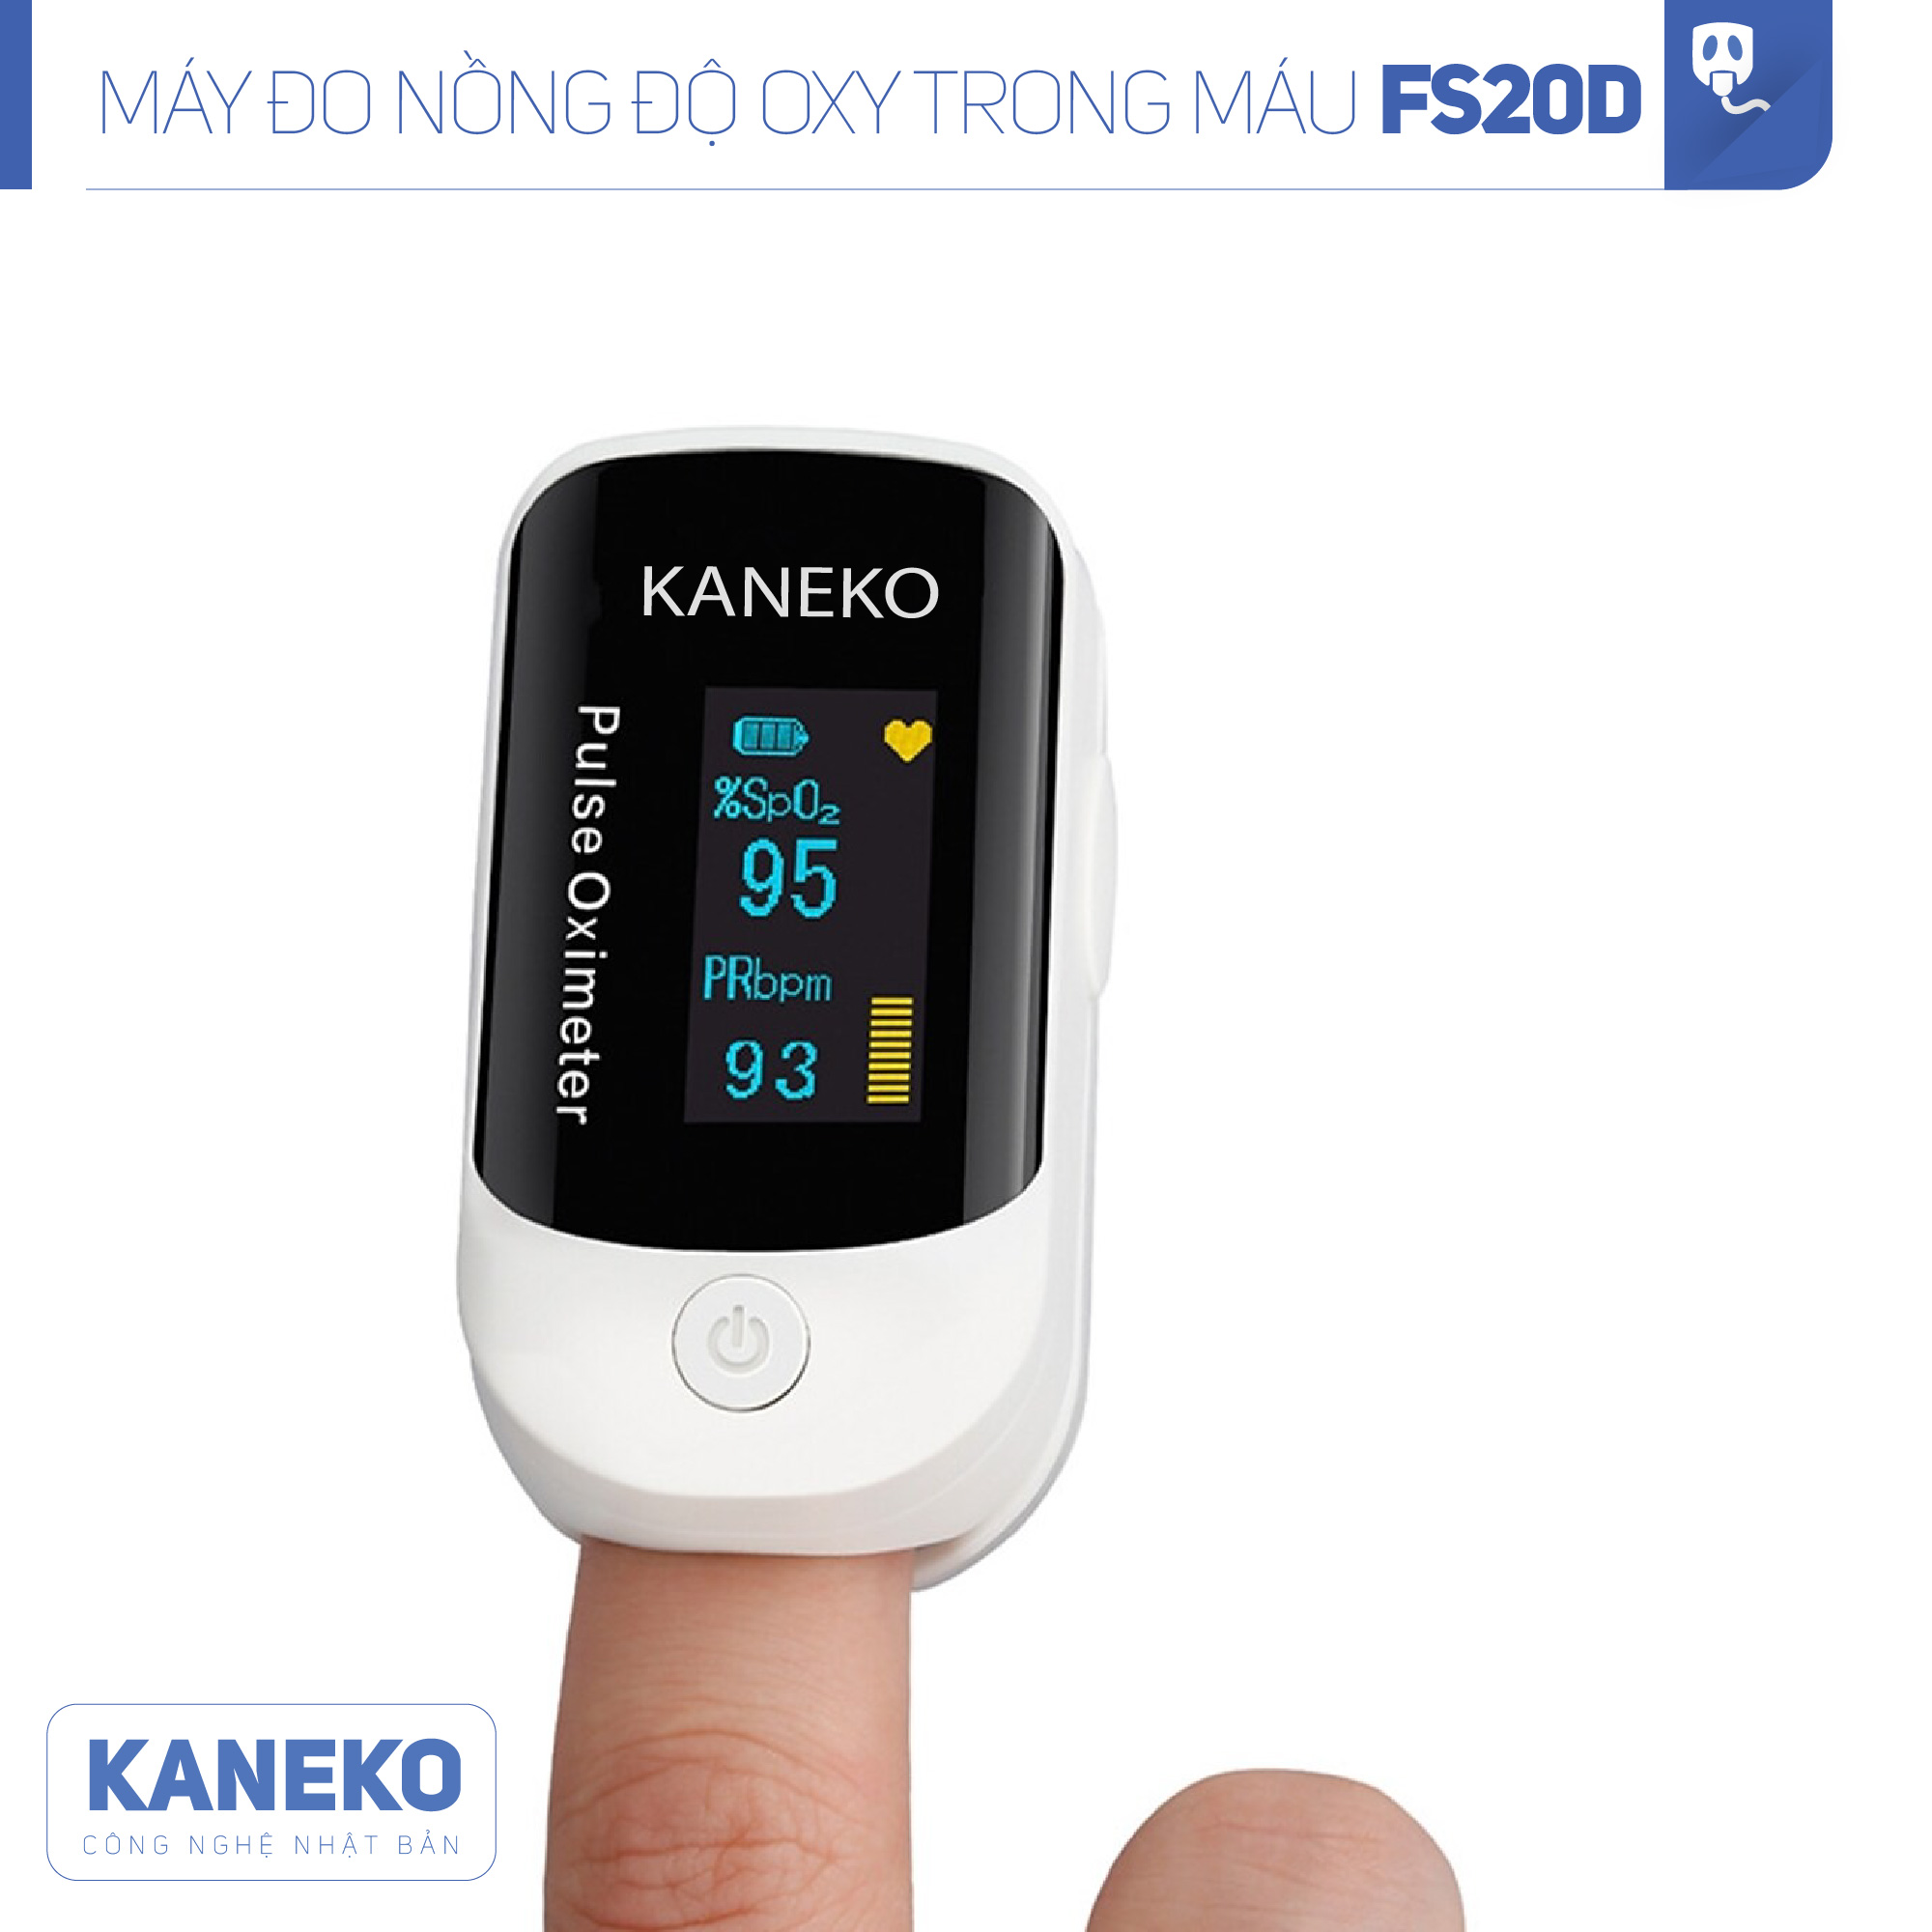 Máy đo nồng độ oxy trong máu KANEKO FS20D,máy đo nồng độ SPO2,máy đo oxy kẹp tay kẹp tai kẹp chân,máy đo khí oxy có màn hình hiển thị rõ ràng,máy đo nhịp tim